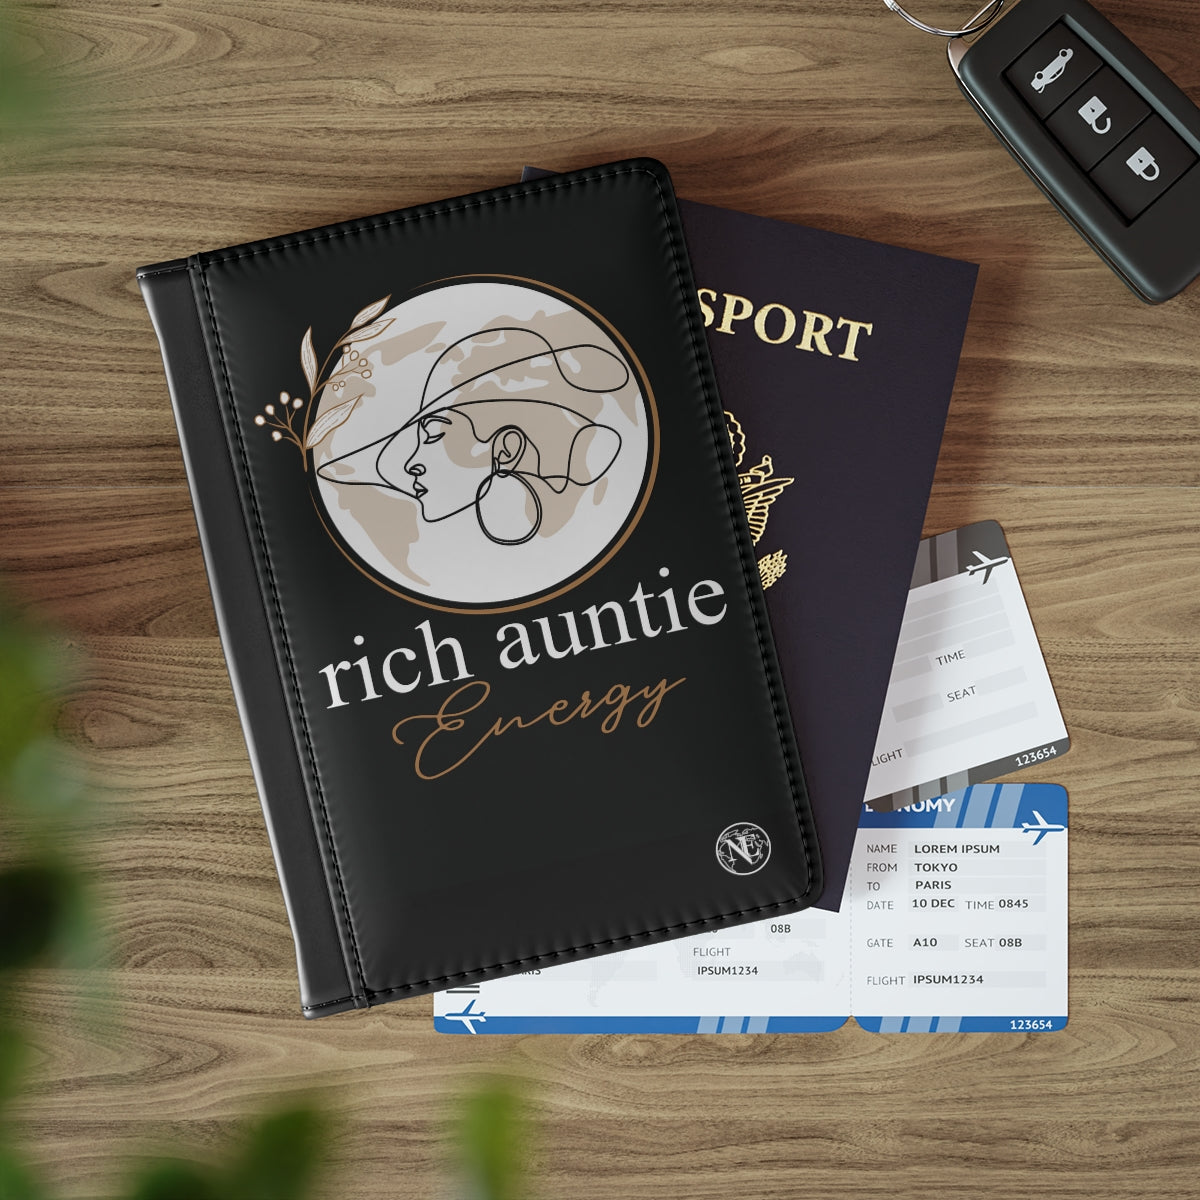 Rich Auntie Passport Cover